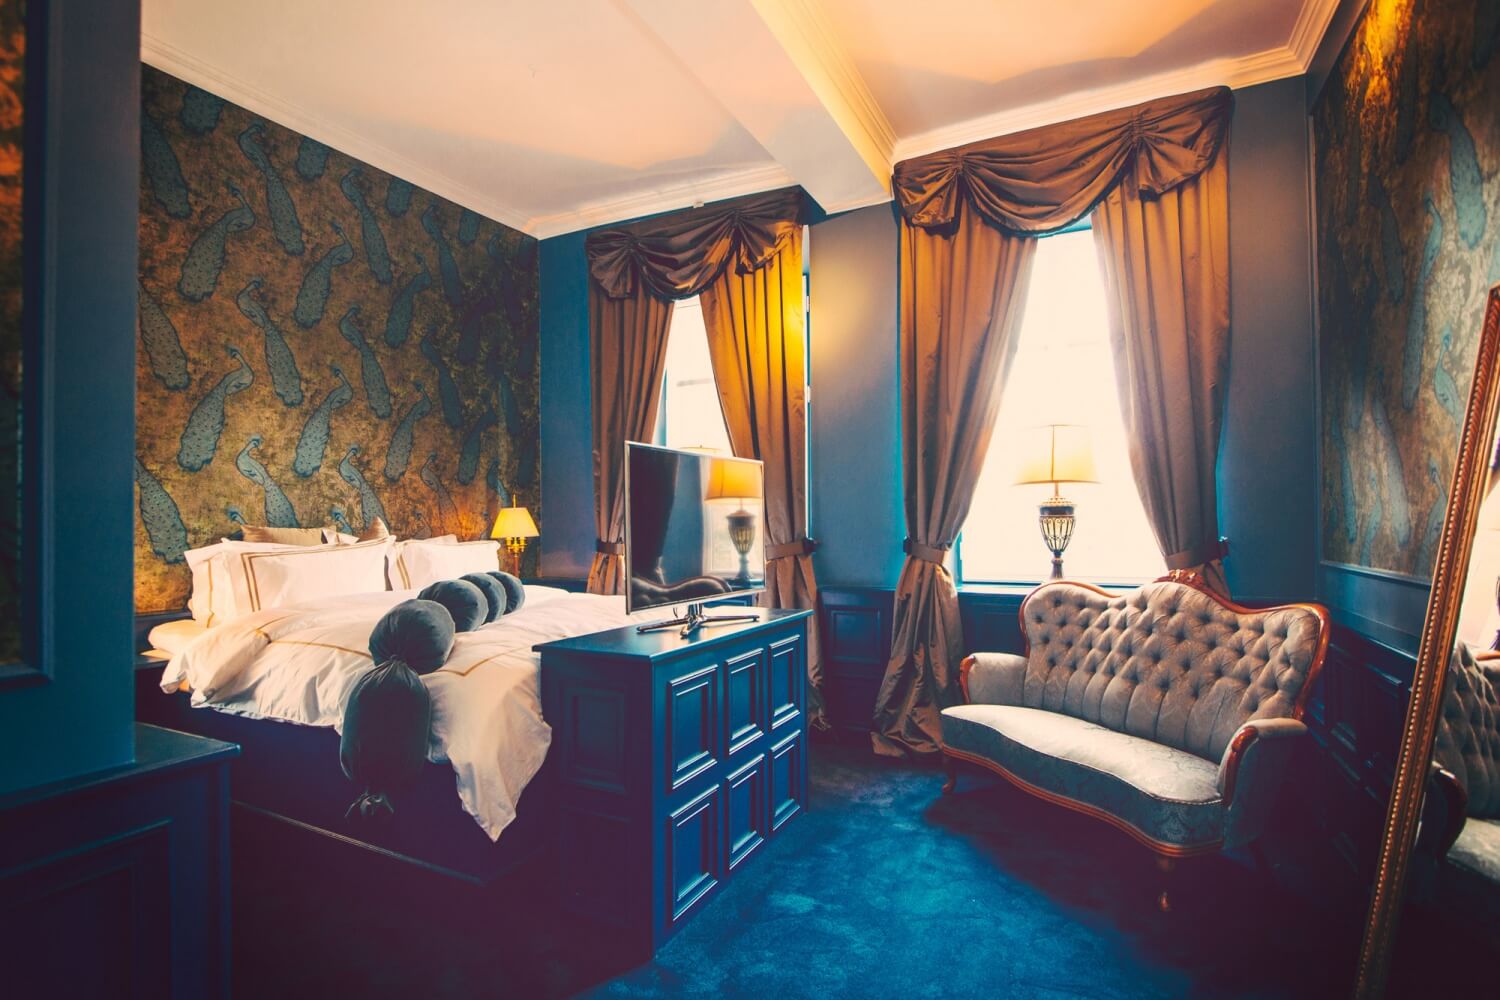  — Hotel Pigalle: La Belle Époque Brought to Life